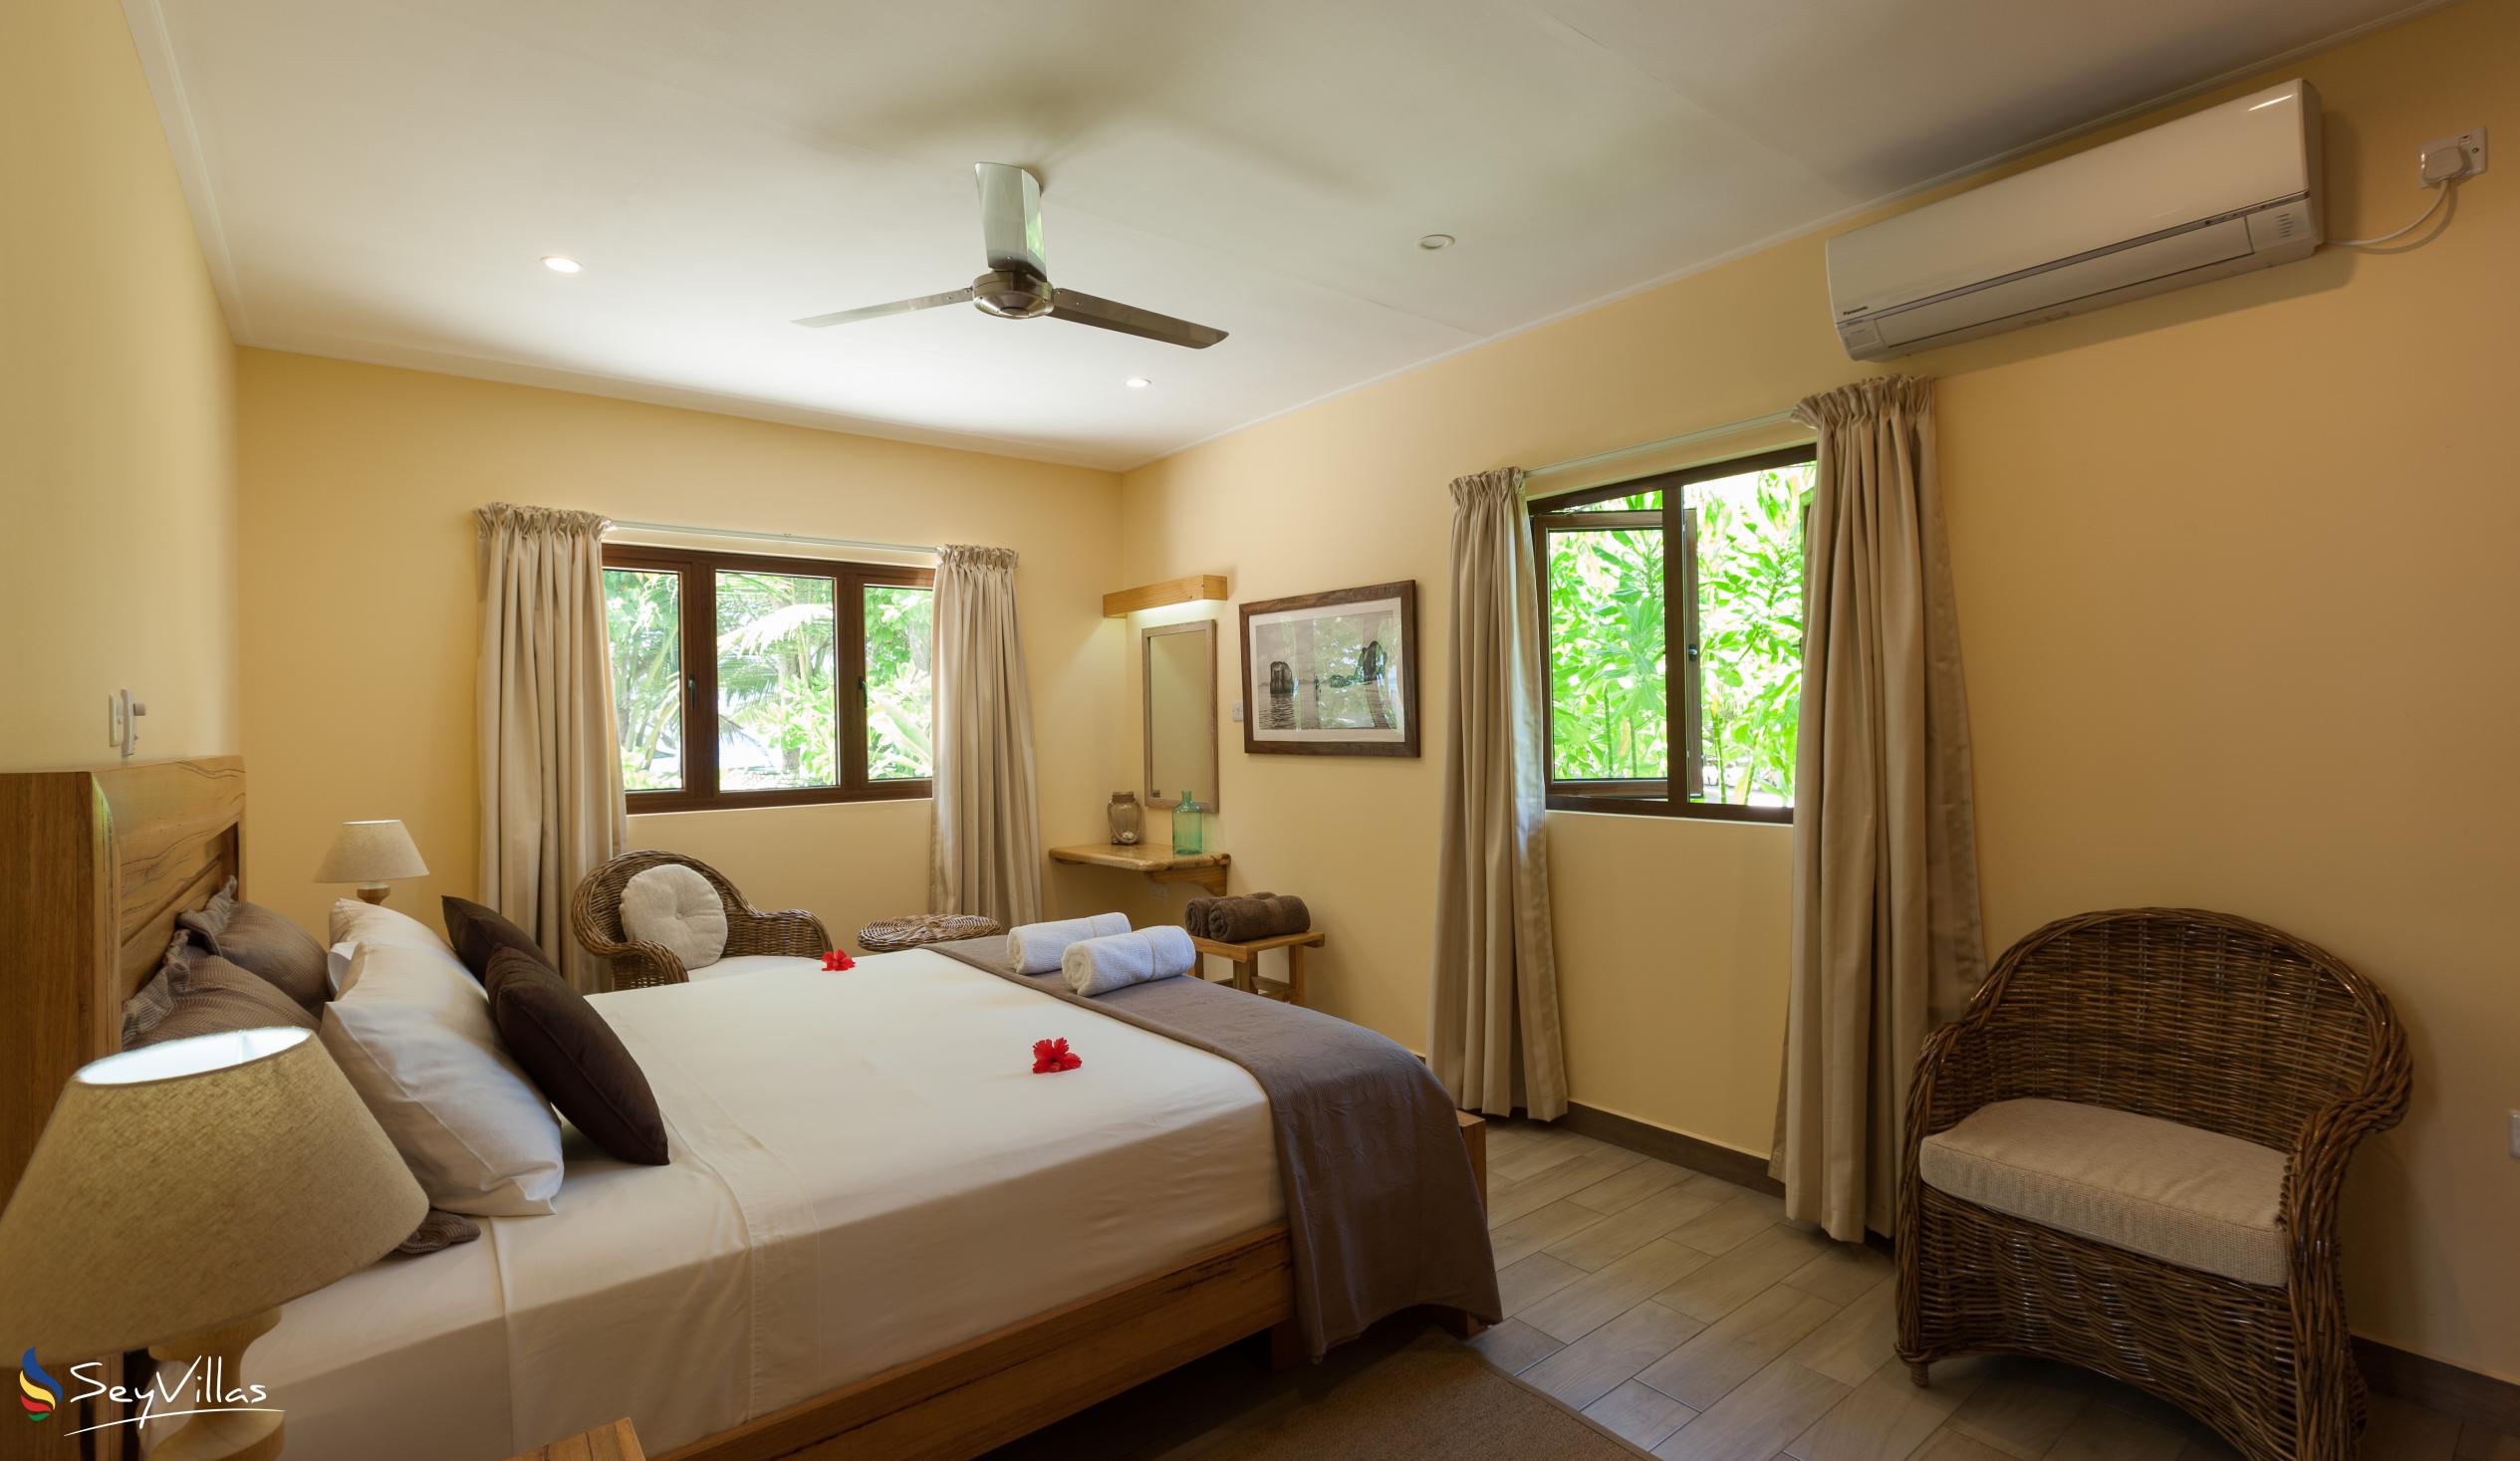 Photo 75: Villa Belle Plage - 1-Bedroom Garden Villa - Praslin (Seychelles)